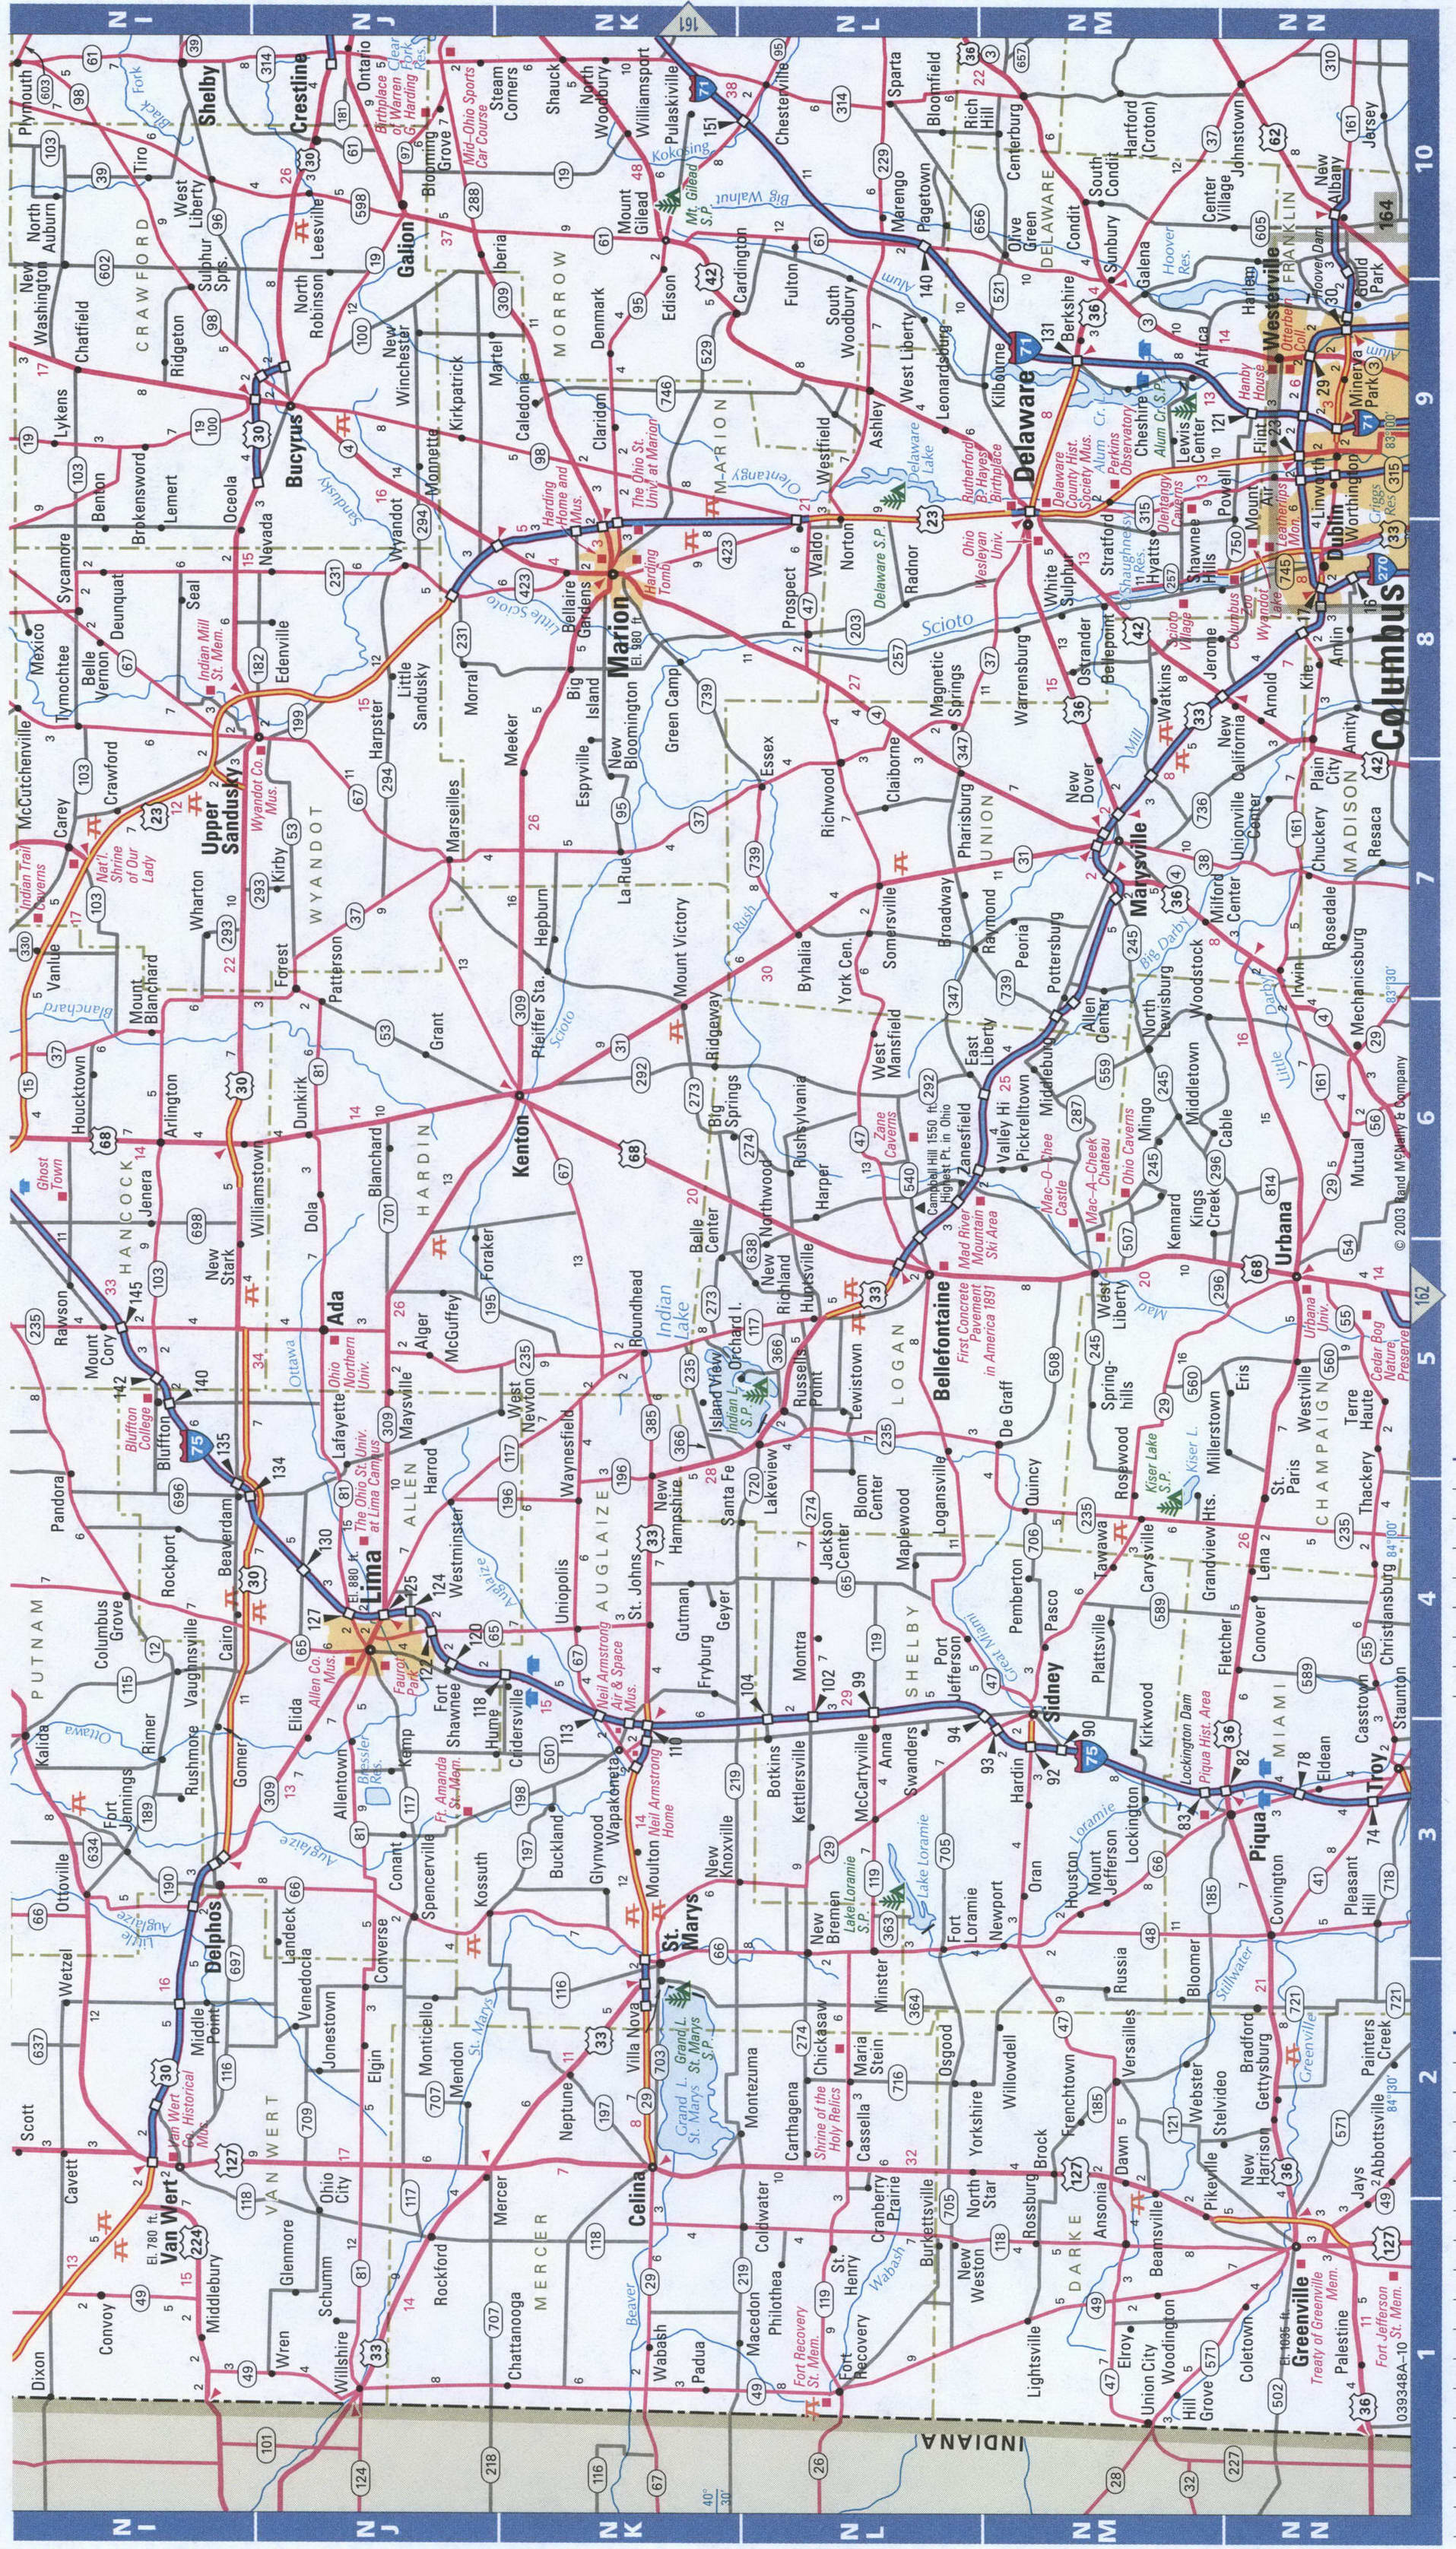 NorthWest Ohio detailed map